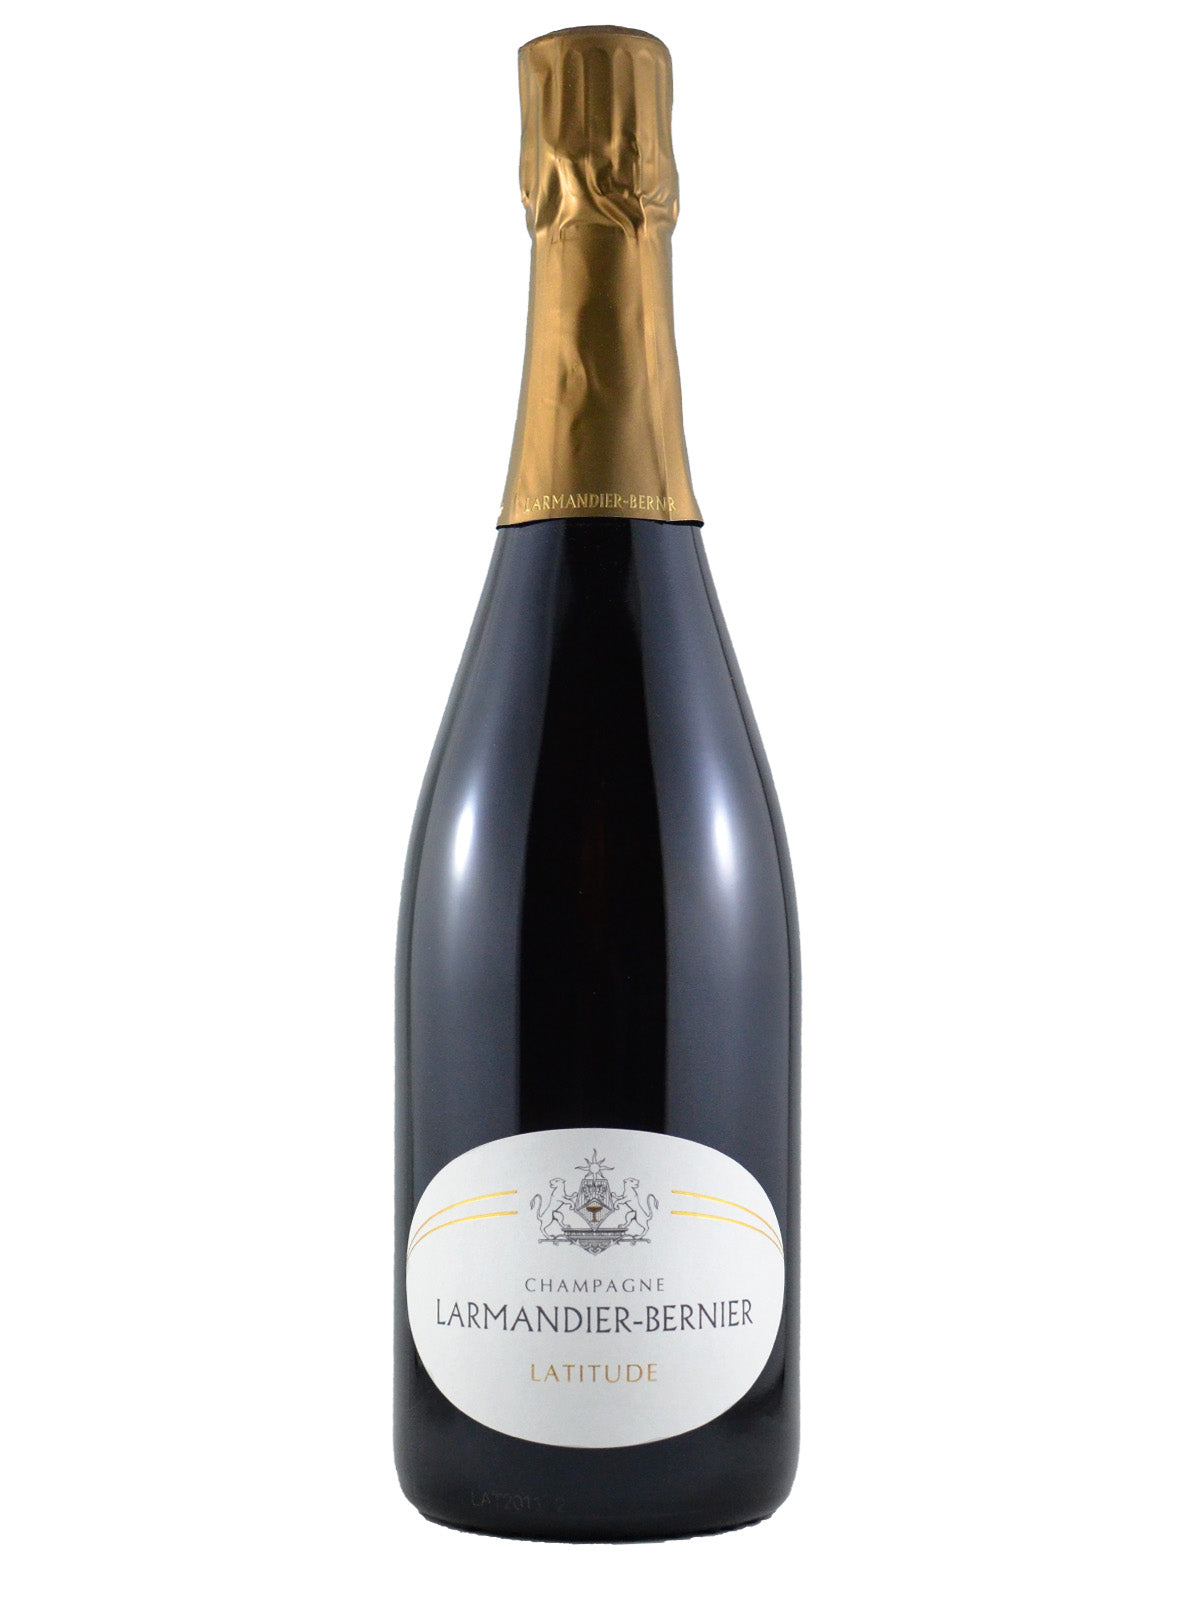 Larmandier-Bernier "Latitude" Champagne